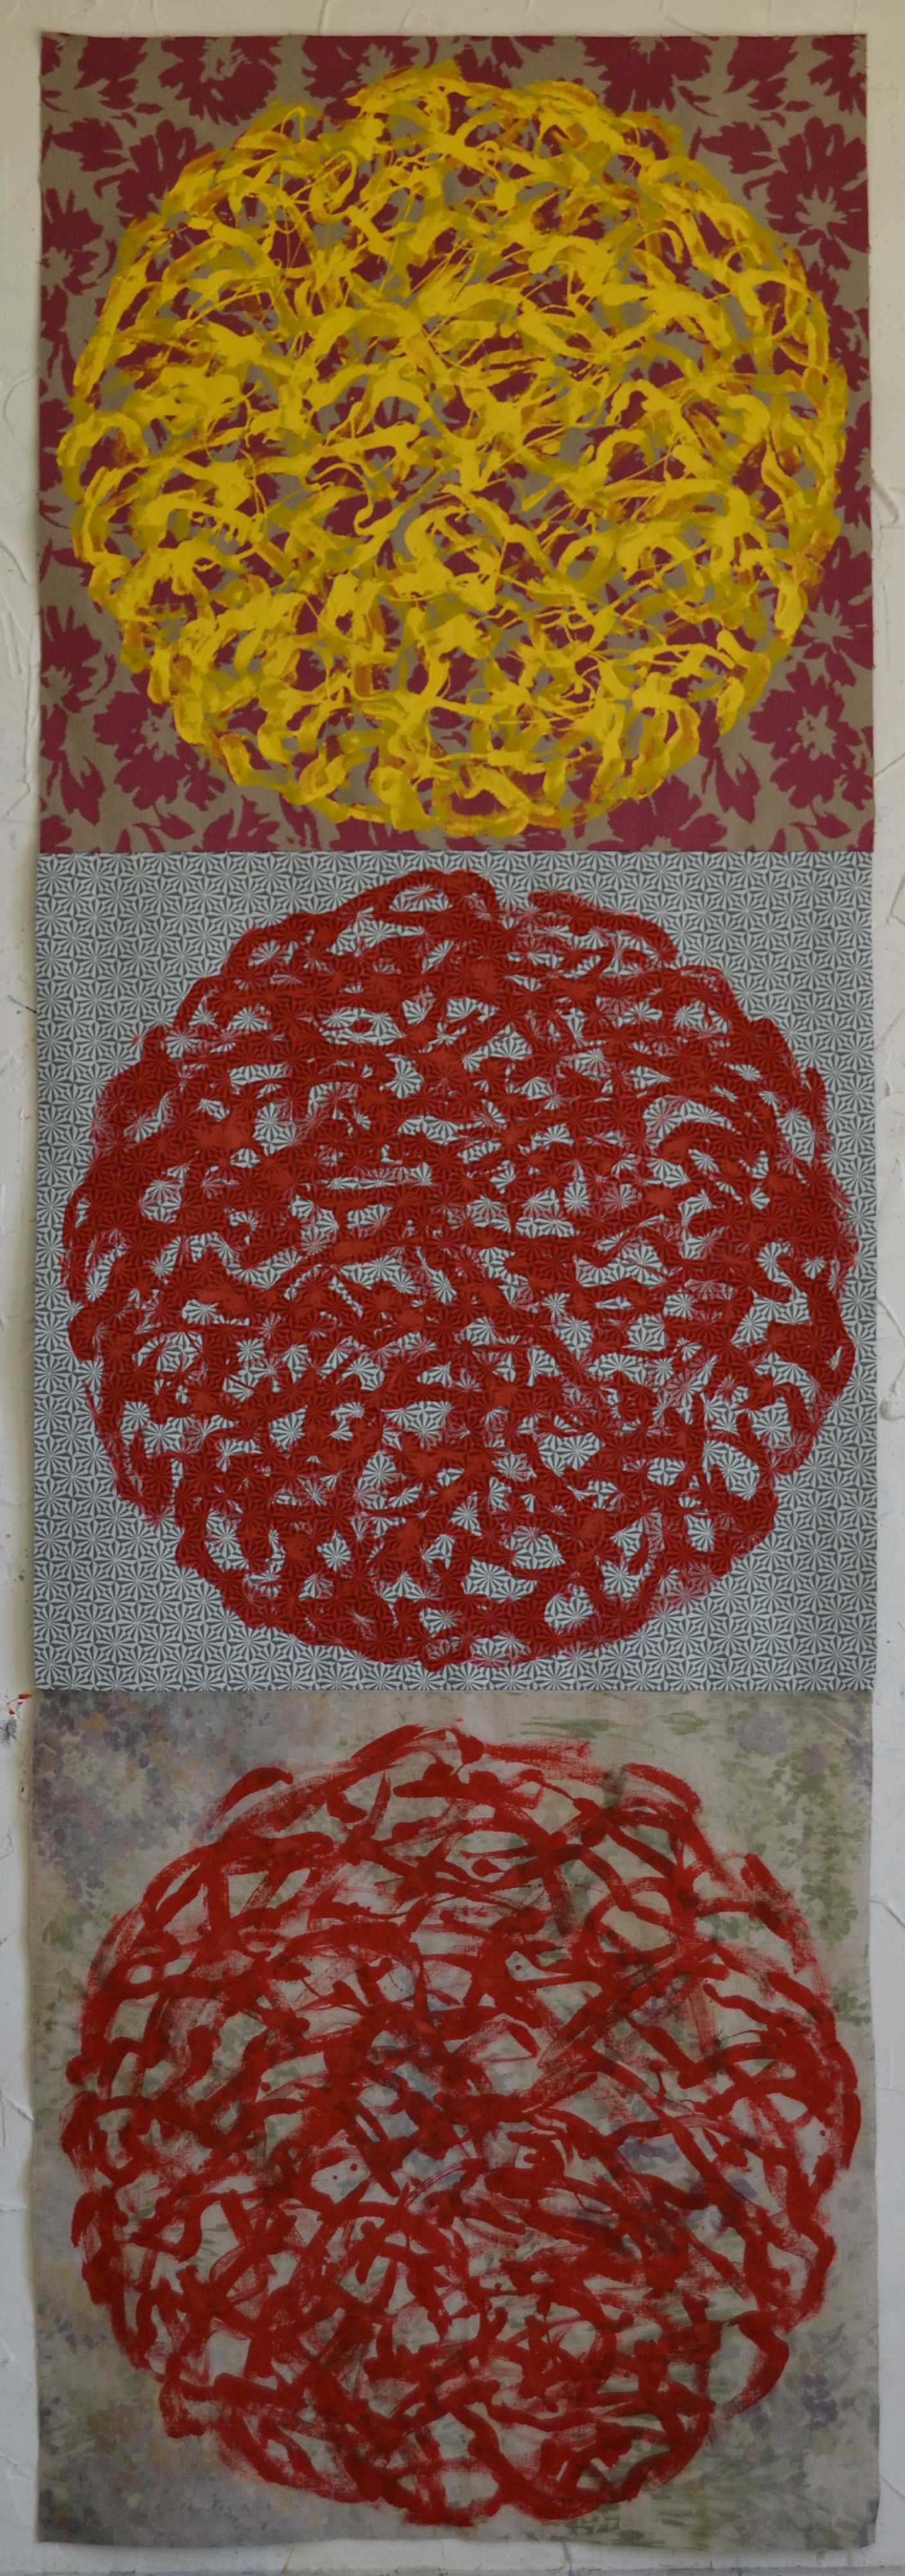 Mappemonde Peinture, acrylique sur tissu libre, 204 x 68 cm